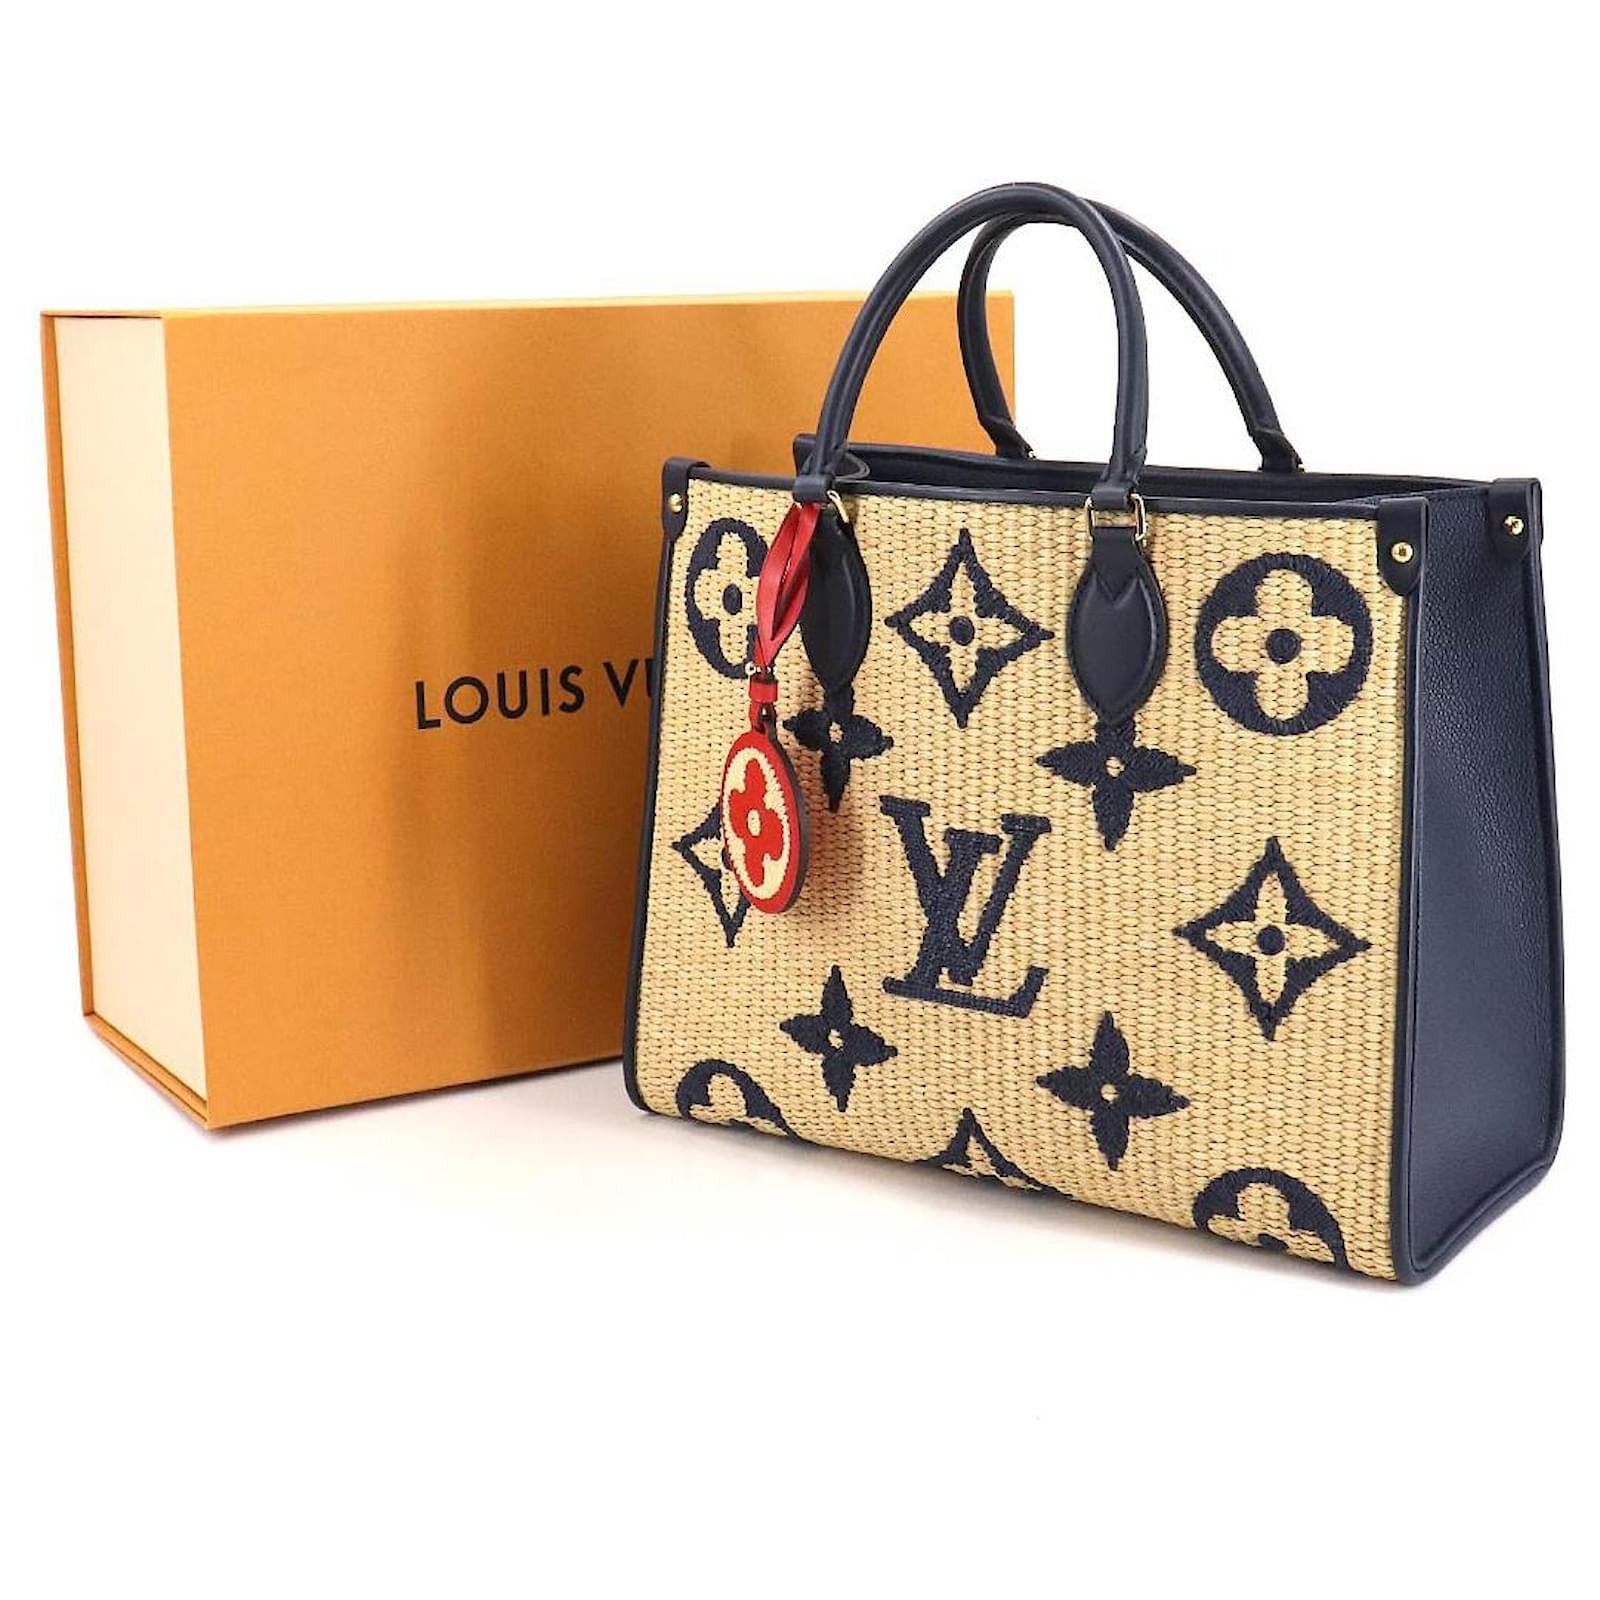 Authenticated used Louis Vuitton Louis Vuitton Monogram on The Go mm Blue M57723 Ladies Raffia Tote Bag, Adult Unisex, Size: (HxWxD): 26cm x 34cm x